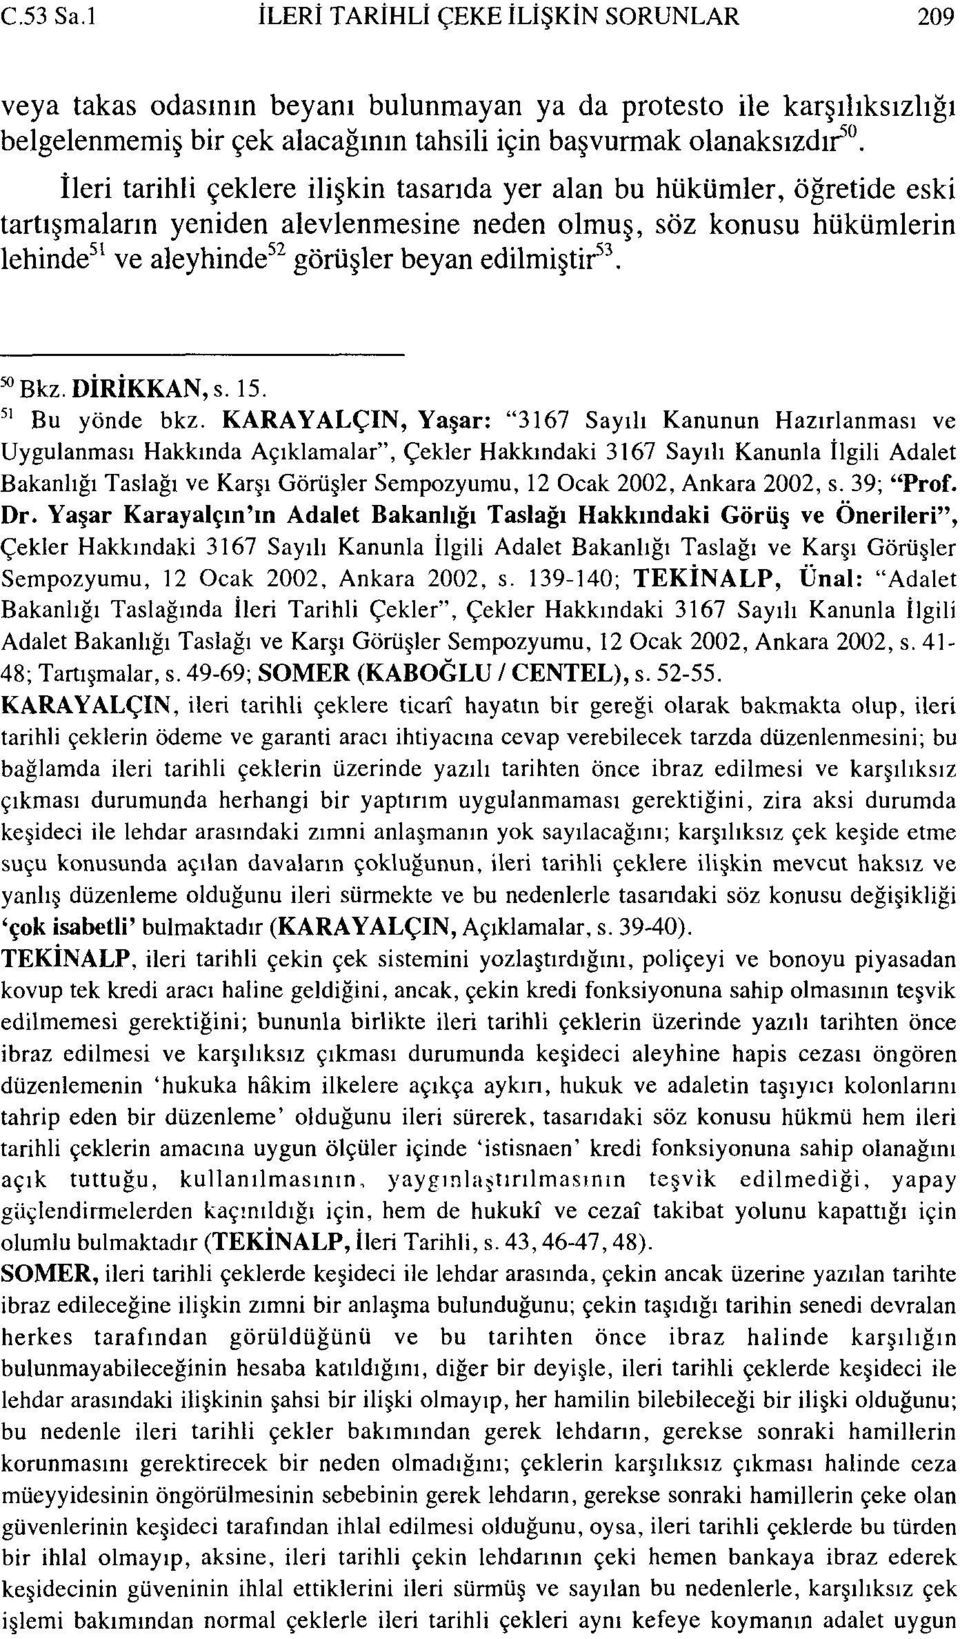 53. ^Bkz DİRİKKAN,s. 15. 51 Bu yönde bkz.